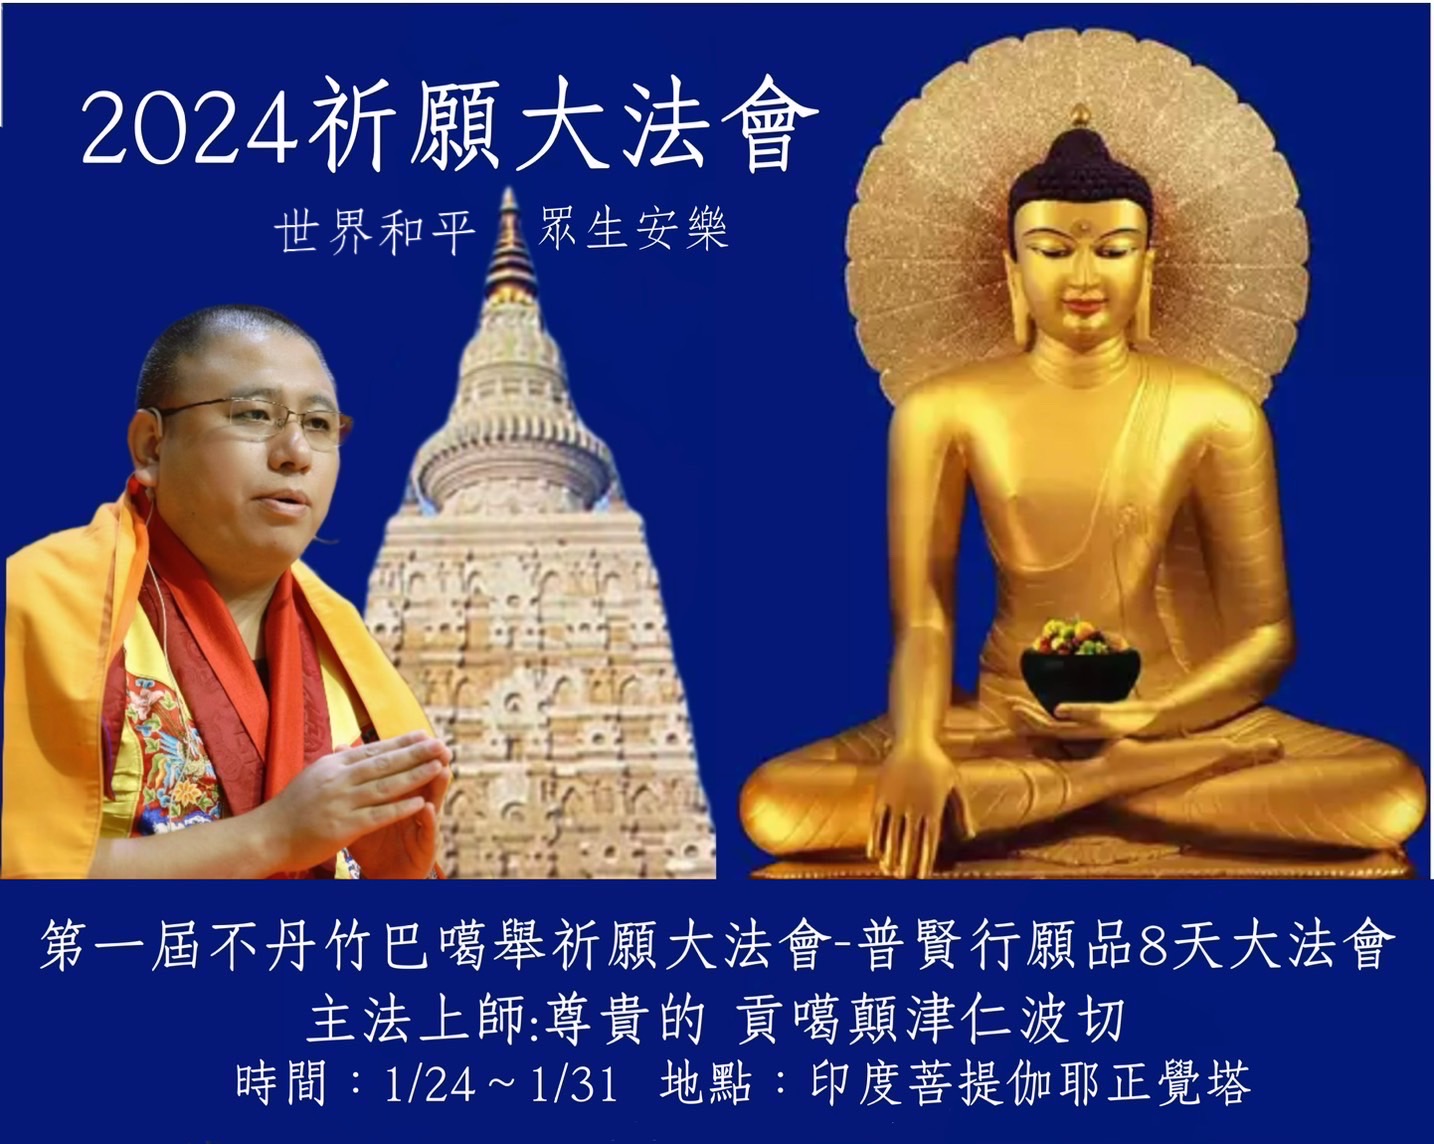 第一屆不丹竹巴噶舉祈願大法會
《普賢行願品8天大法會》
